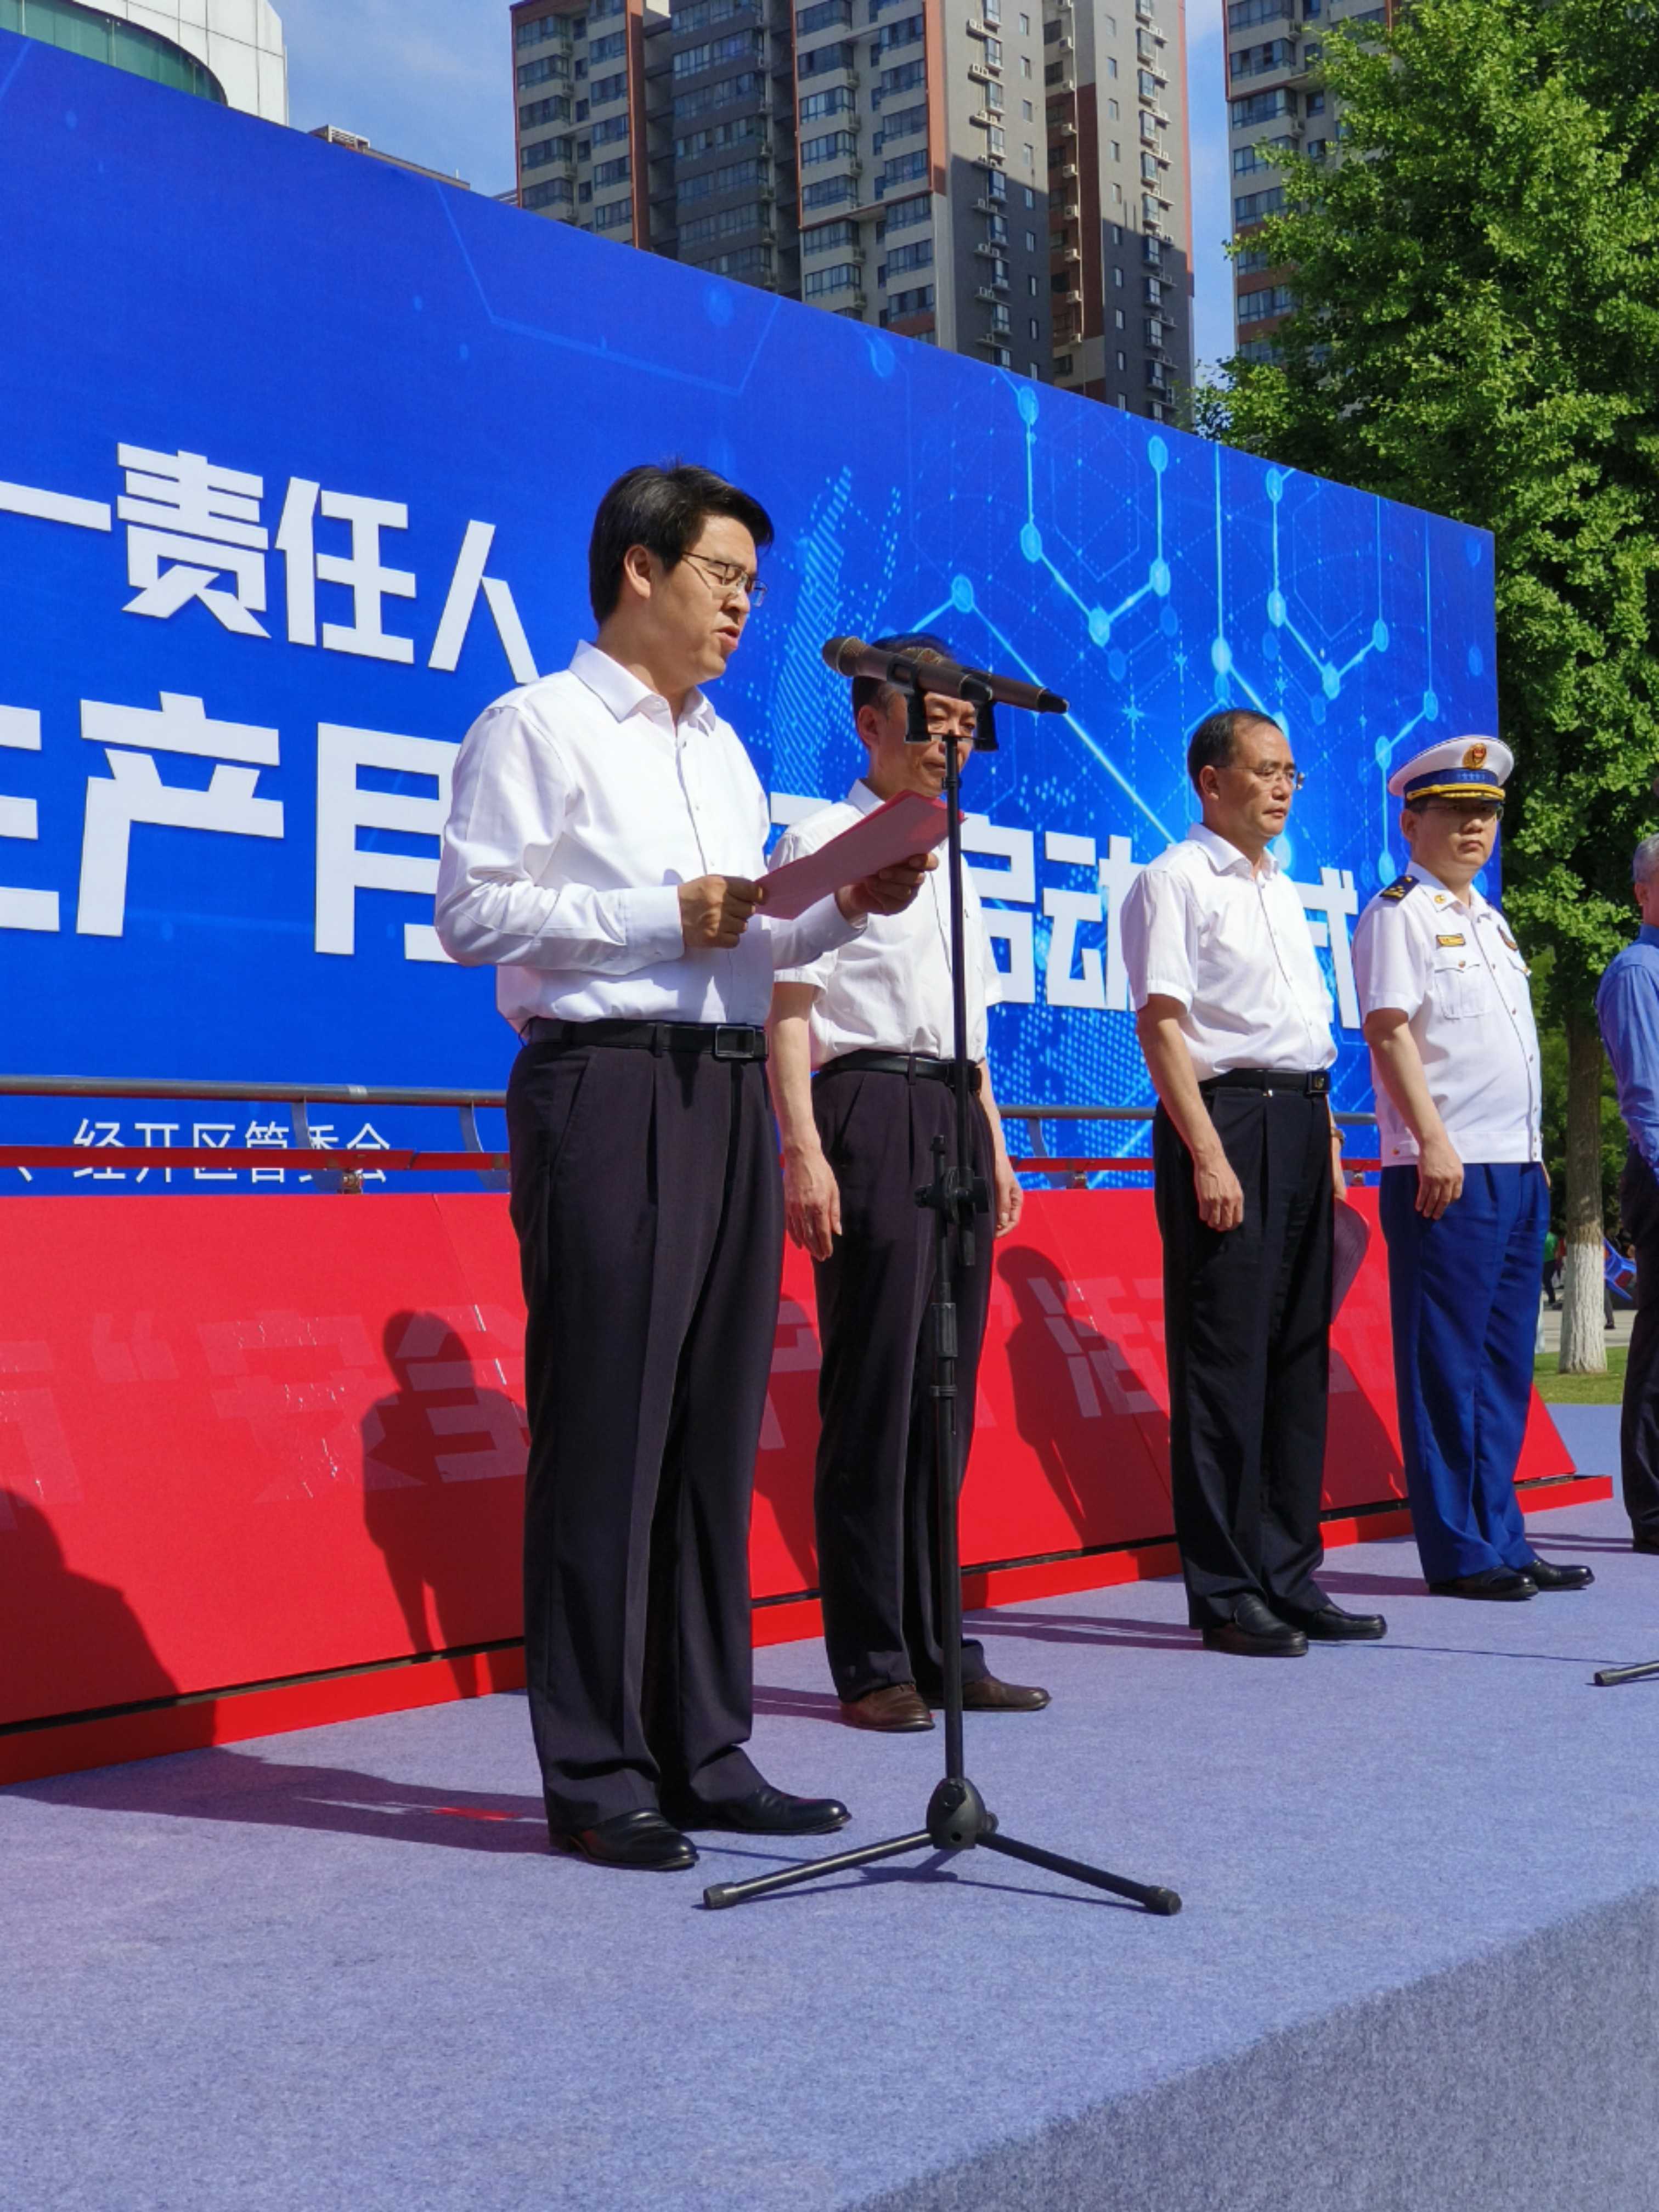 启动仪式上,企业代表陕西煤业化工集团有限公司副总经理袁广金围绕